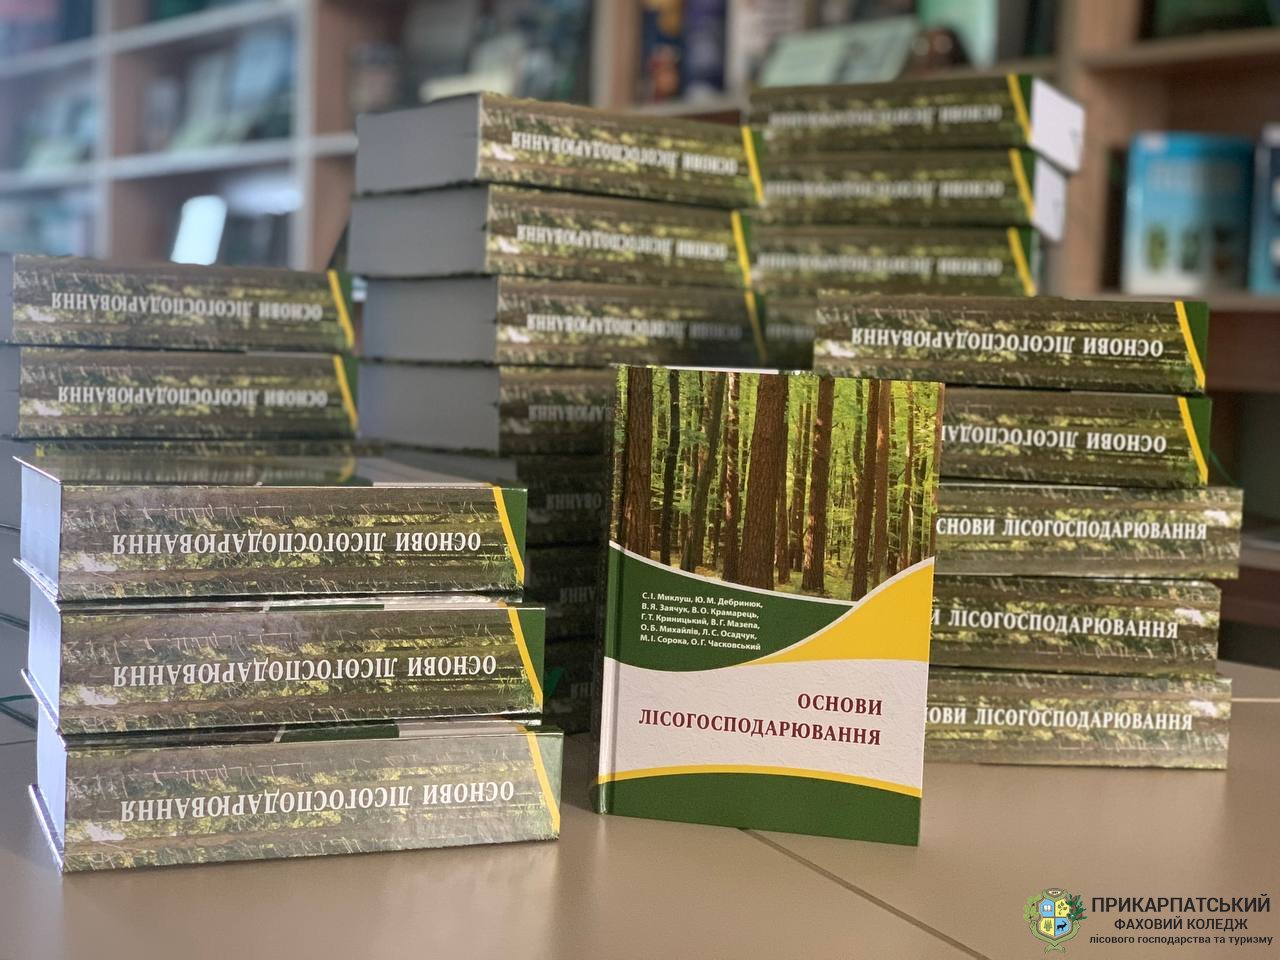 Посібник «Основи лісогосподарювання» - поповнення бібліотеки коледжу